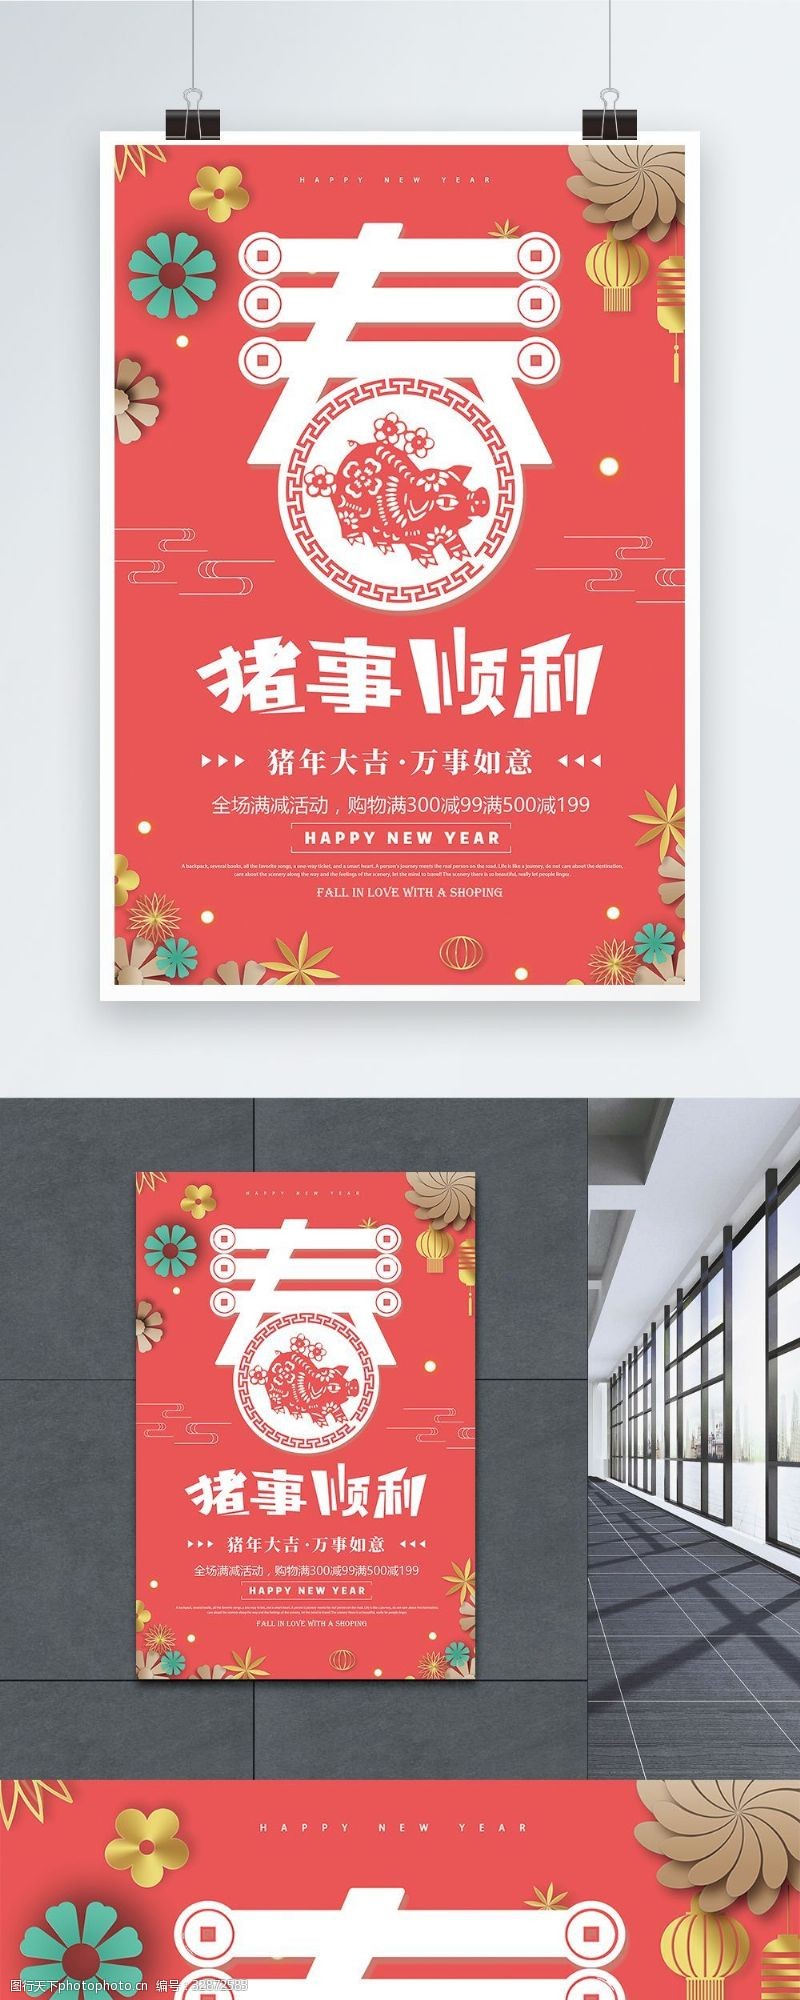 荣耀2019珊瑚粉2019猪事顺利新年促销海报